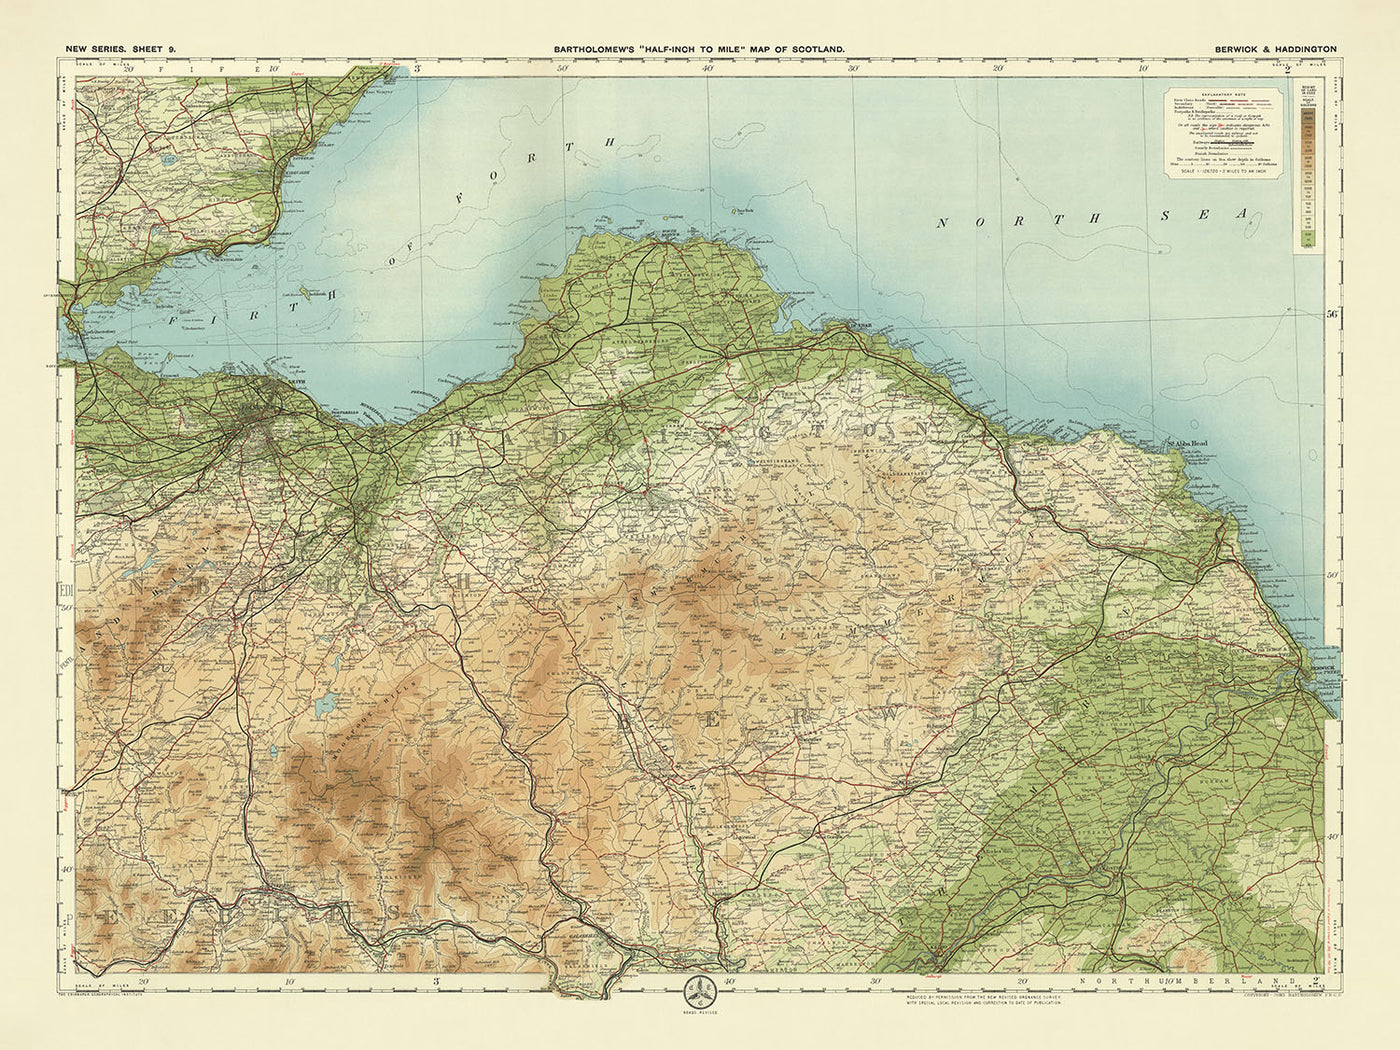 Alte OS-Karte von Berwick-upon-Tweed, Northumberland von Bartholomew, 1901: Fluss Tweed, Lammermuir Hills, Bass Rock, St Abb's Head, Dunbar Castle, Eisenbahnen